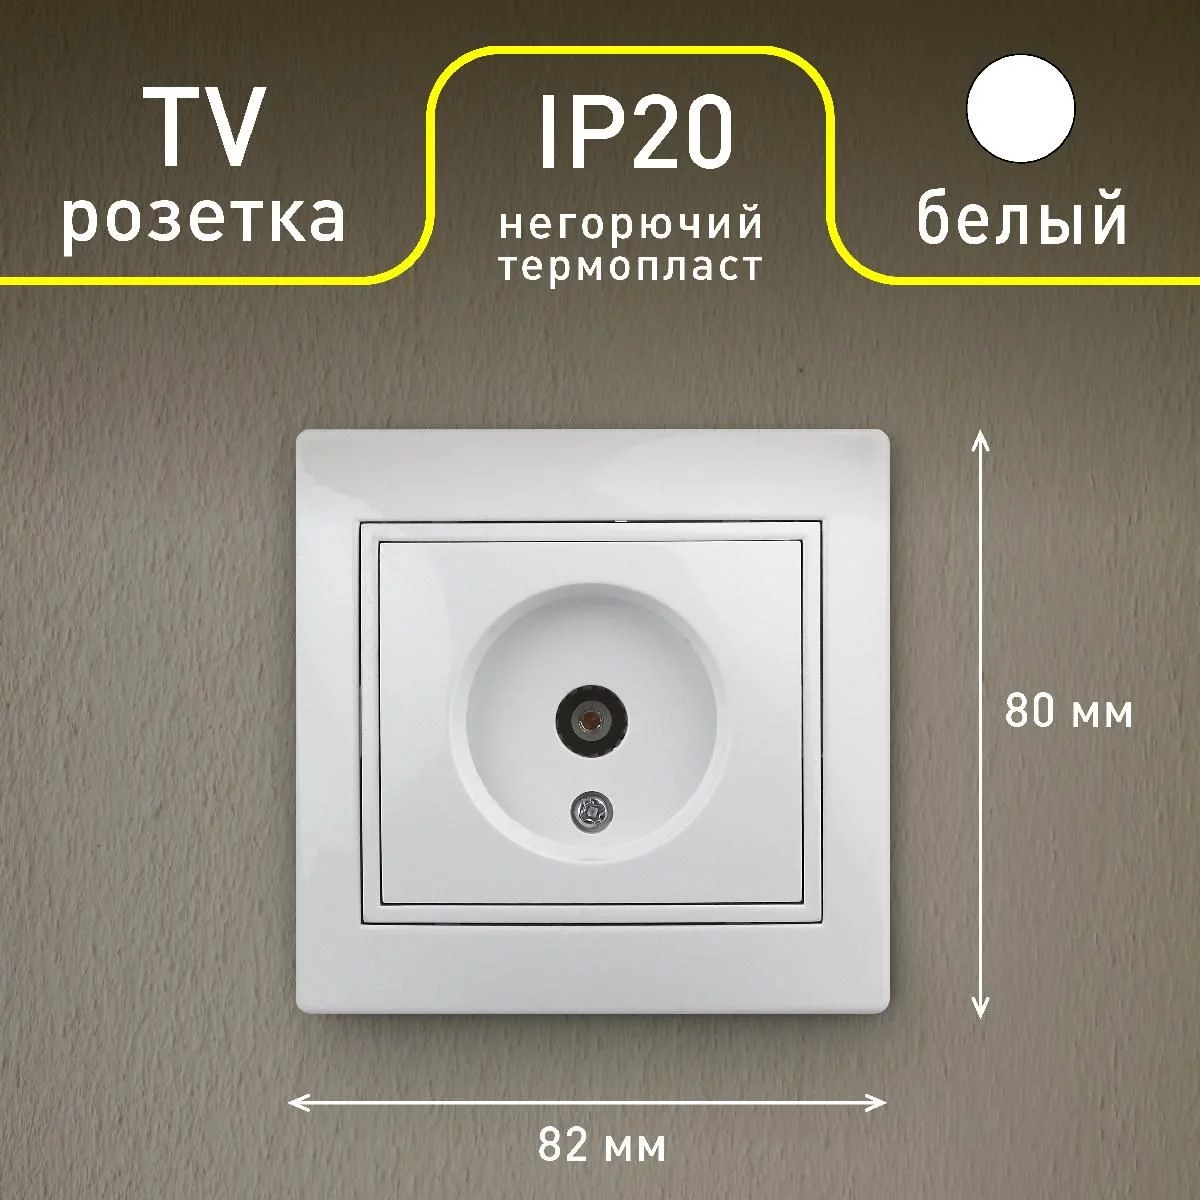 Розетка Intro Plano 1-301-01 TV одиночная, IP20, СУ, белый